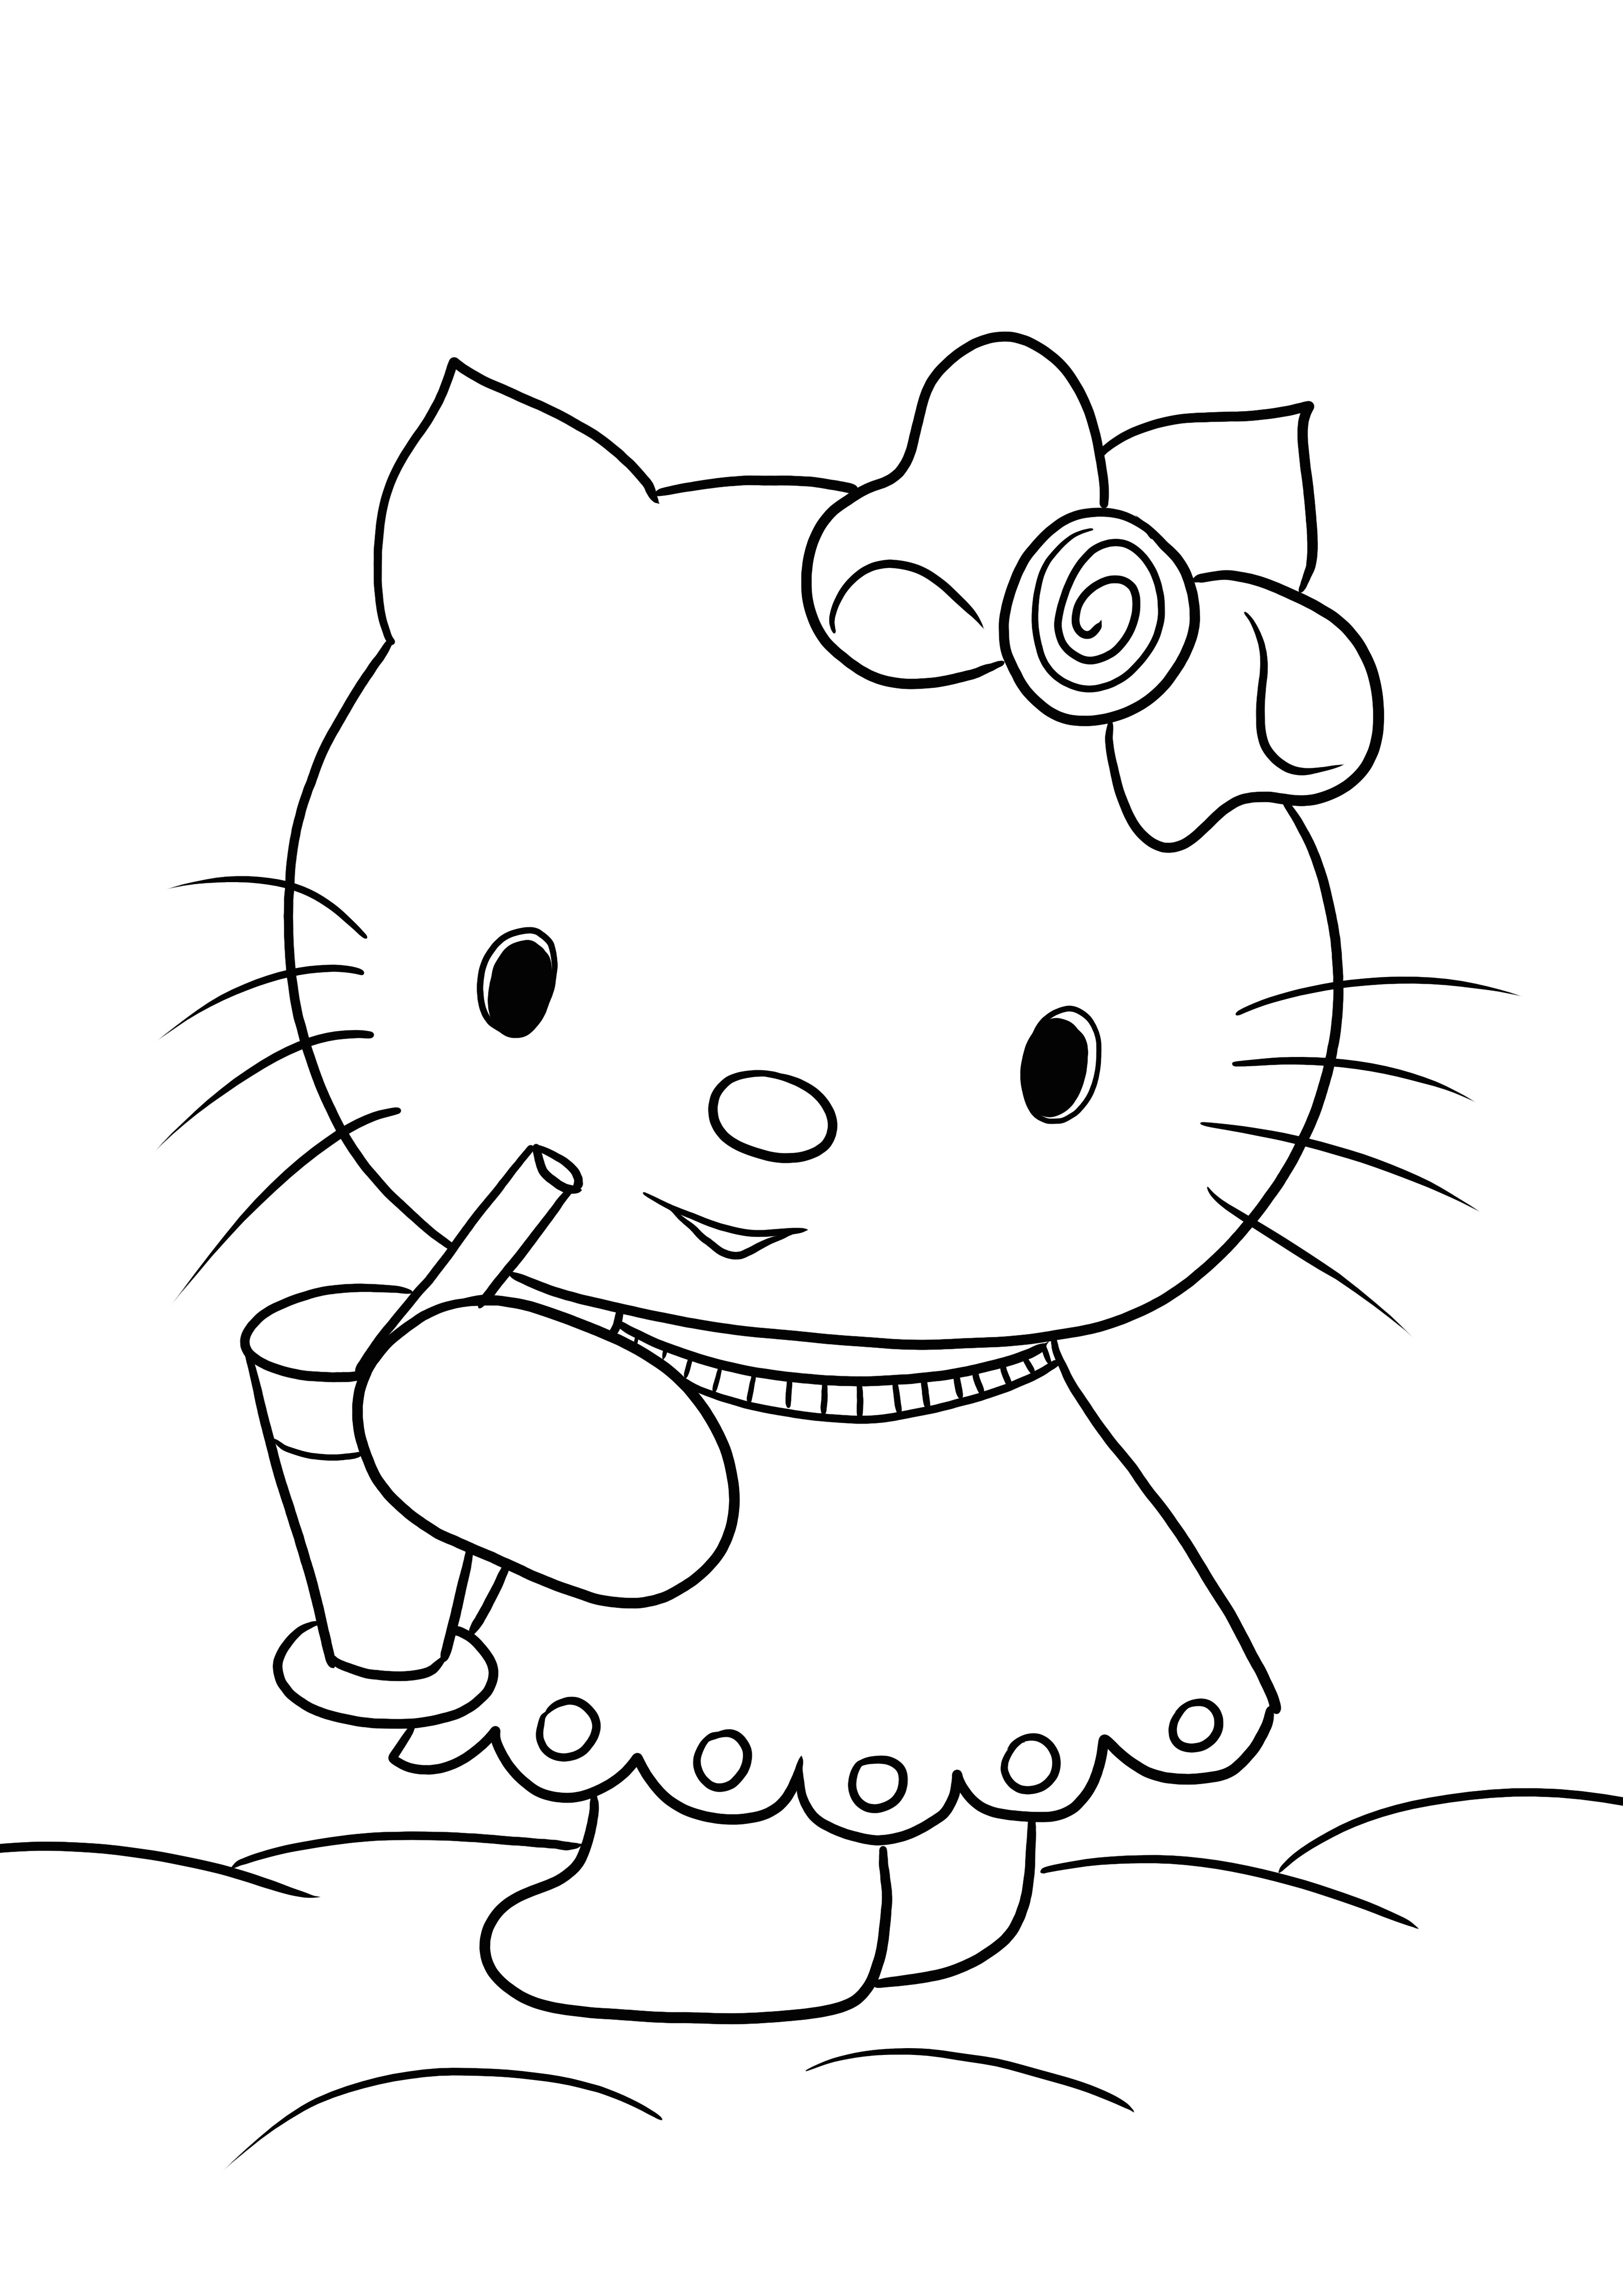 Hello Kitty pije swoją ulubioną lemoniadę bez lemoniady do wydrukowania i kolorowania dla dzieci